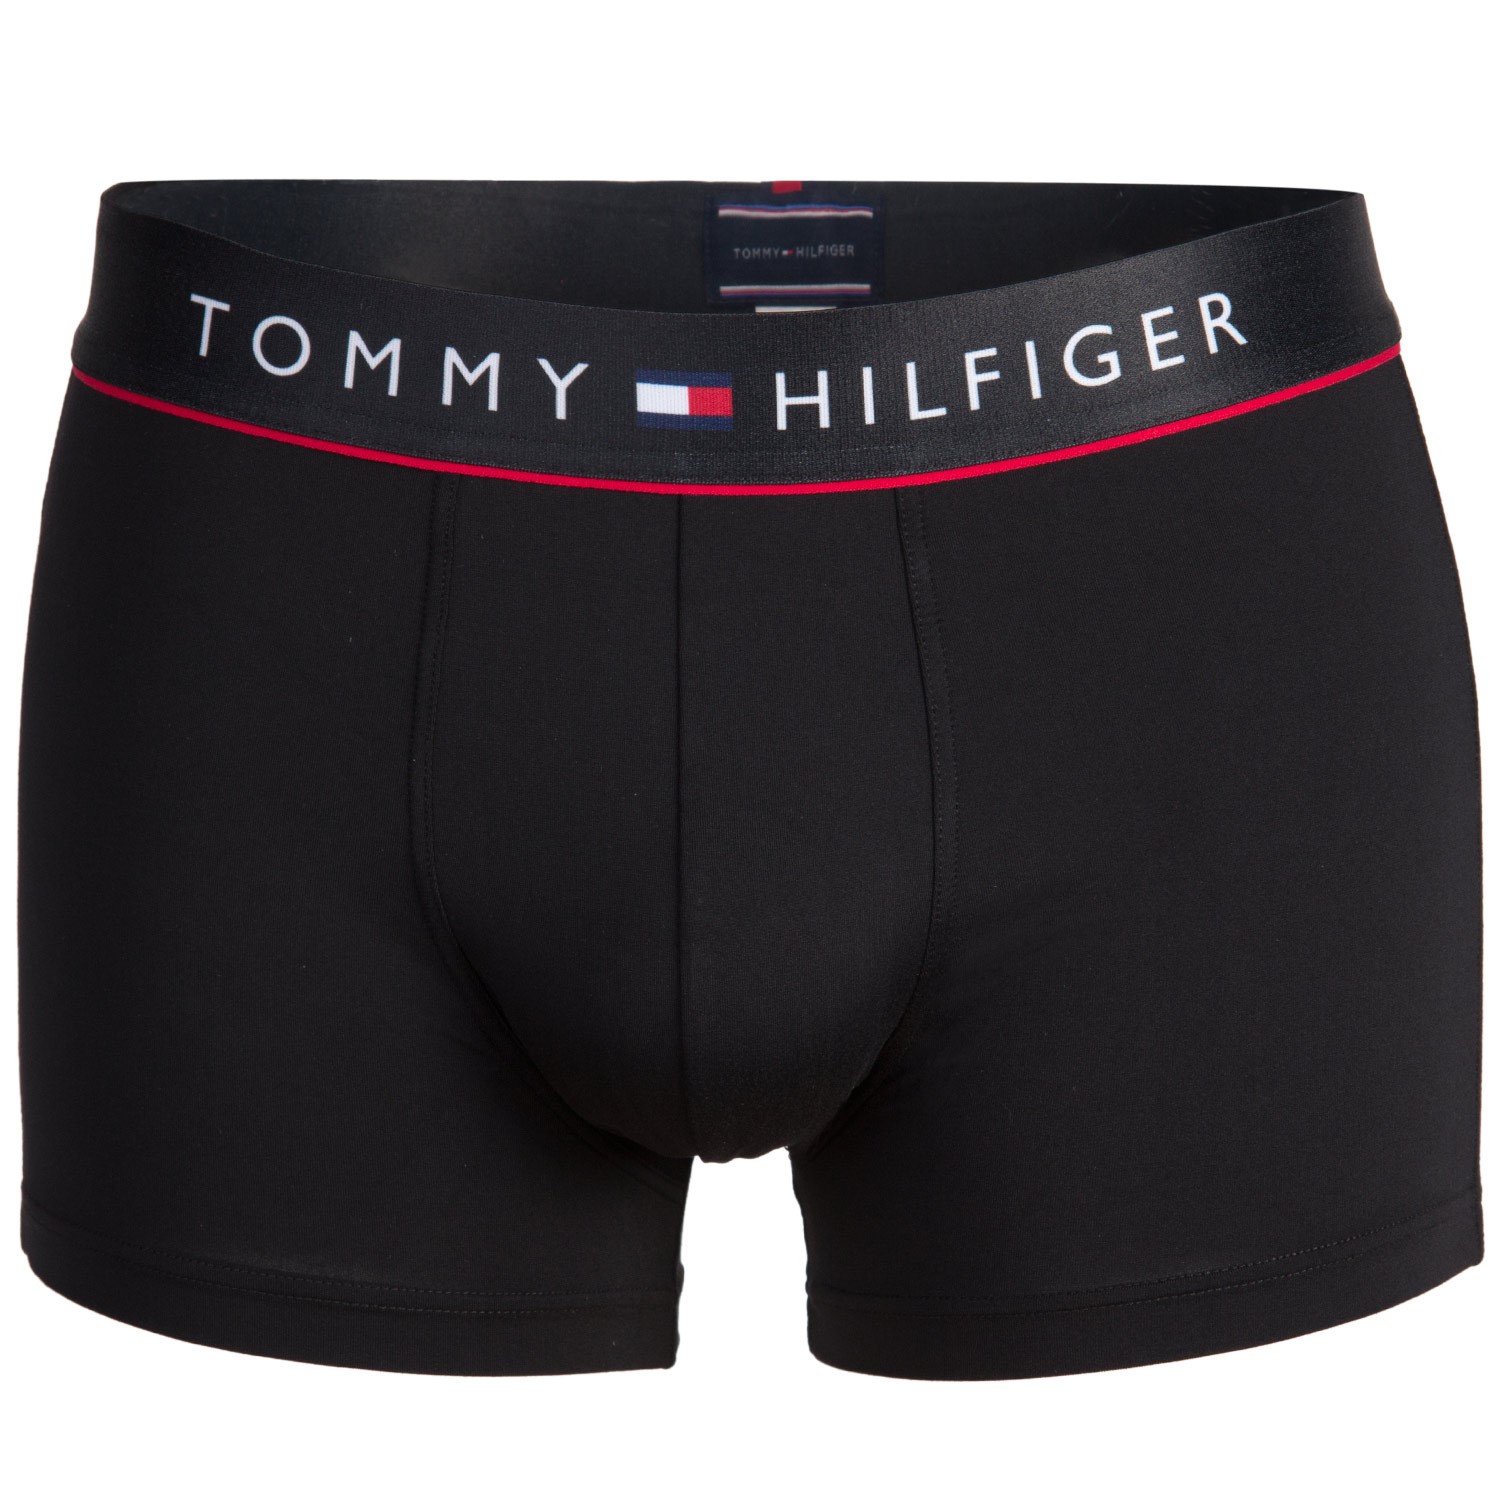 Tommy Hilfiger Microfiber Flex Trunk - Boxer - Trunks - Underwear ...